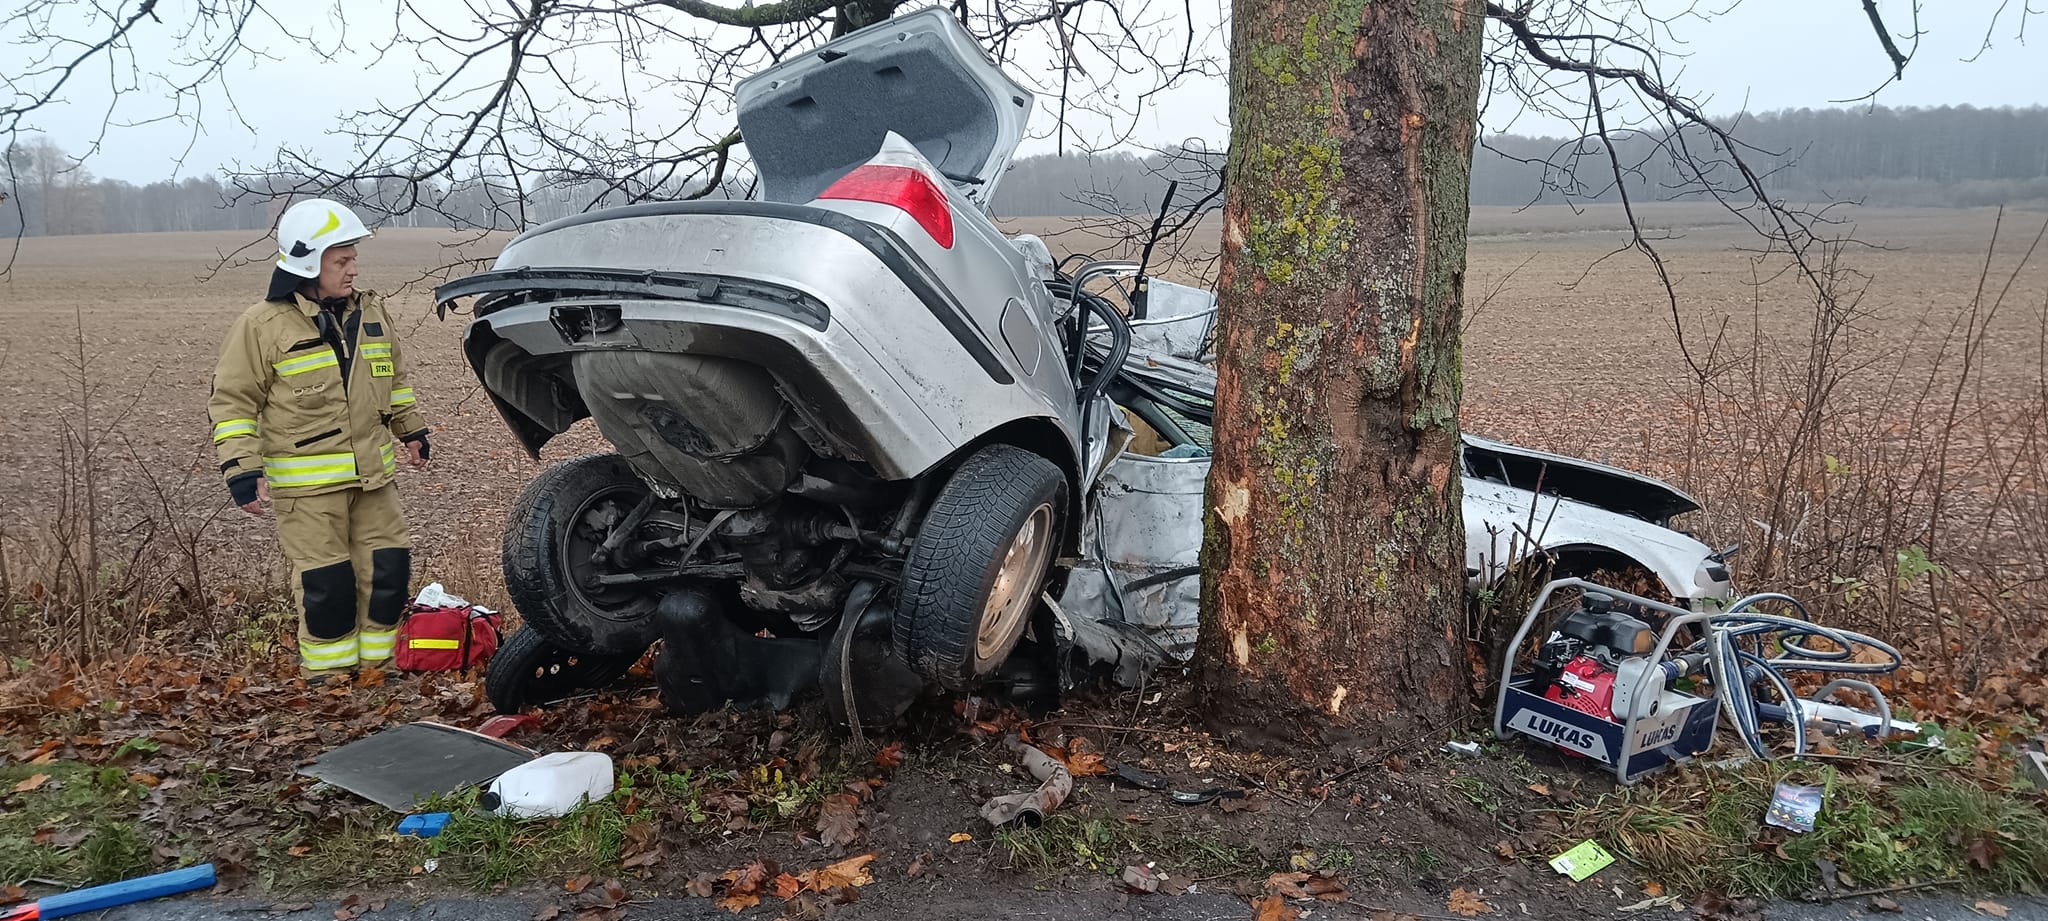 Tragiczny wypadek BMW. Samochód uderzył w drzewo, kobieta w szpitalu ruch drogowy Ełk, Wiadomości, zPAP